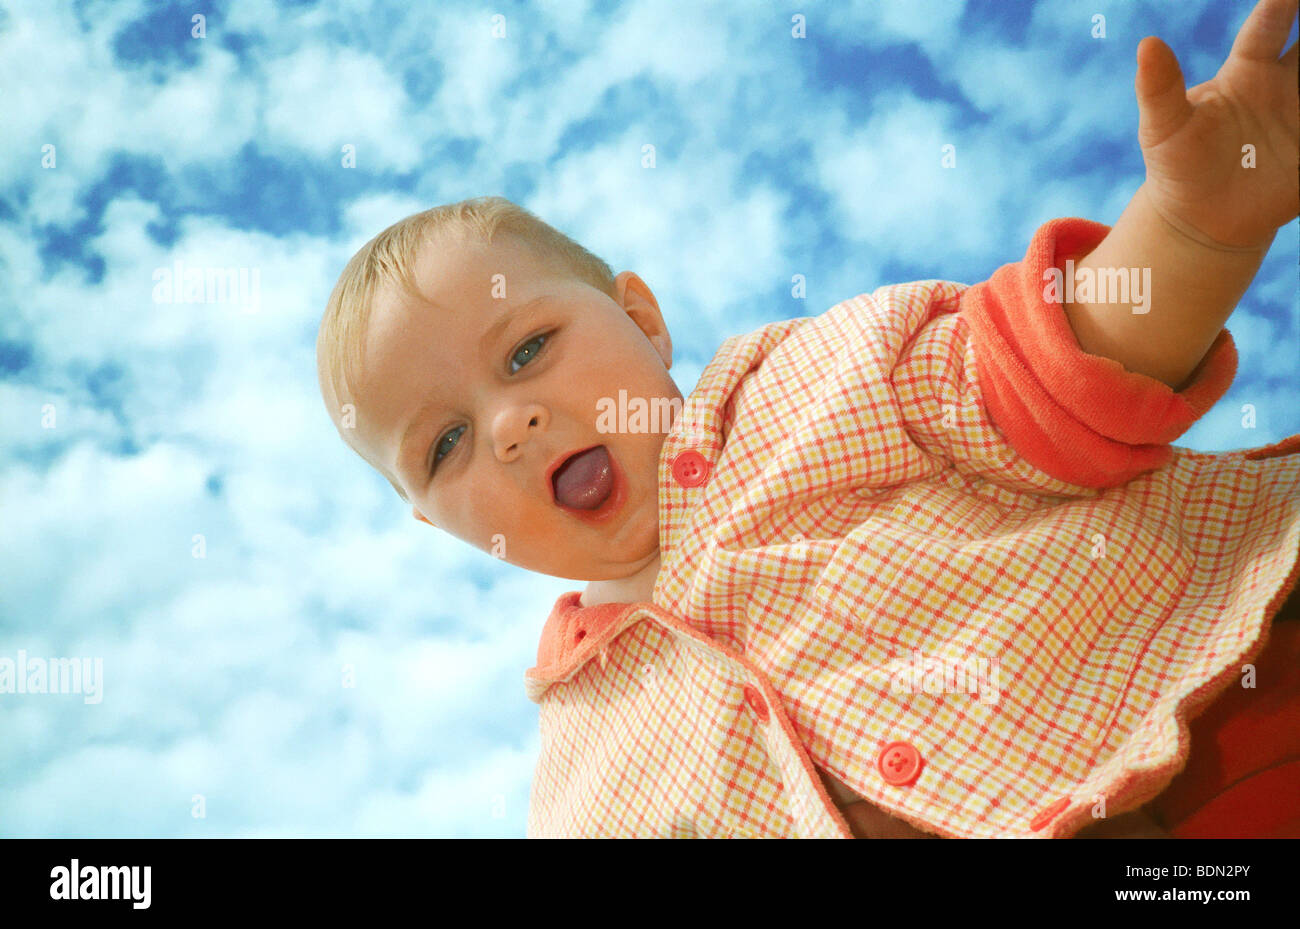 Kleinkind lachend nach oben in die Luft geschleudert, gegen bewölkt blauer Himmel Stockfoto